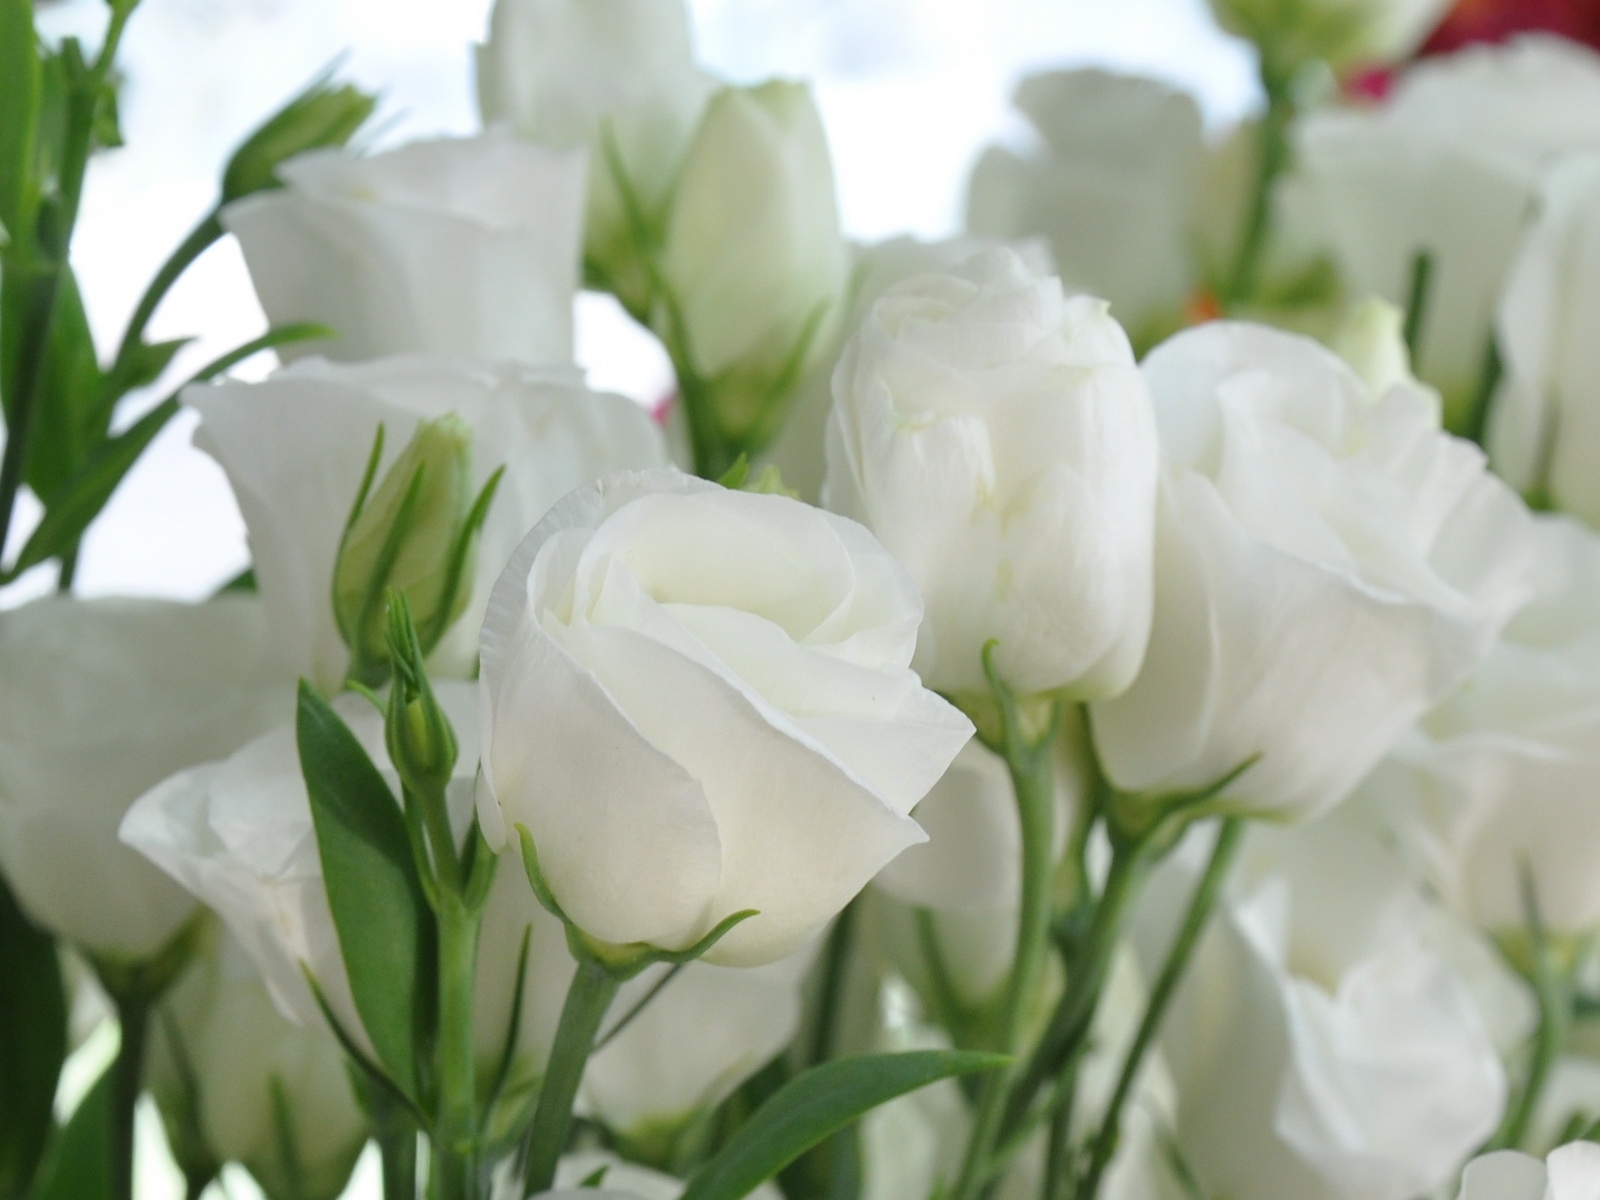 9102 免費下載壁紙 花卉, 假期, 植物, 玫瑰, 明信片, 三月八号 国际妇女节 (iwd) 屏保和圖片